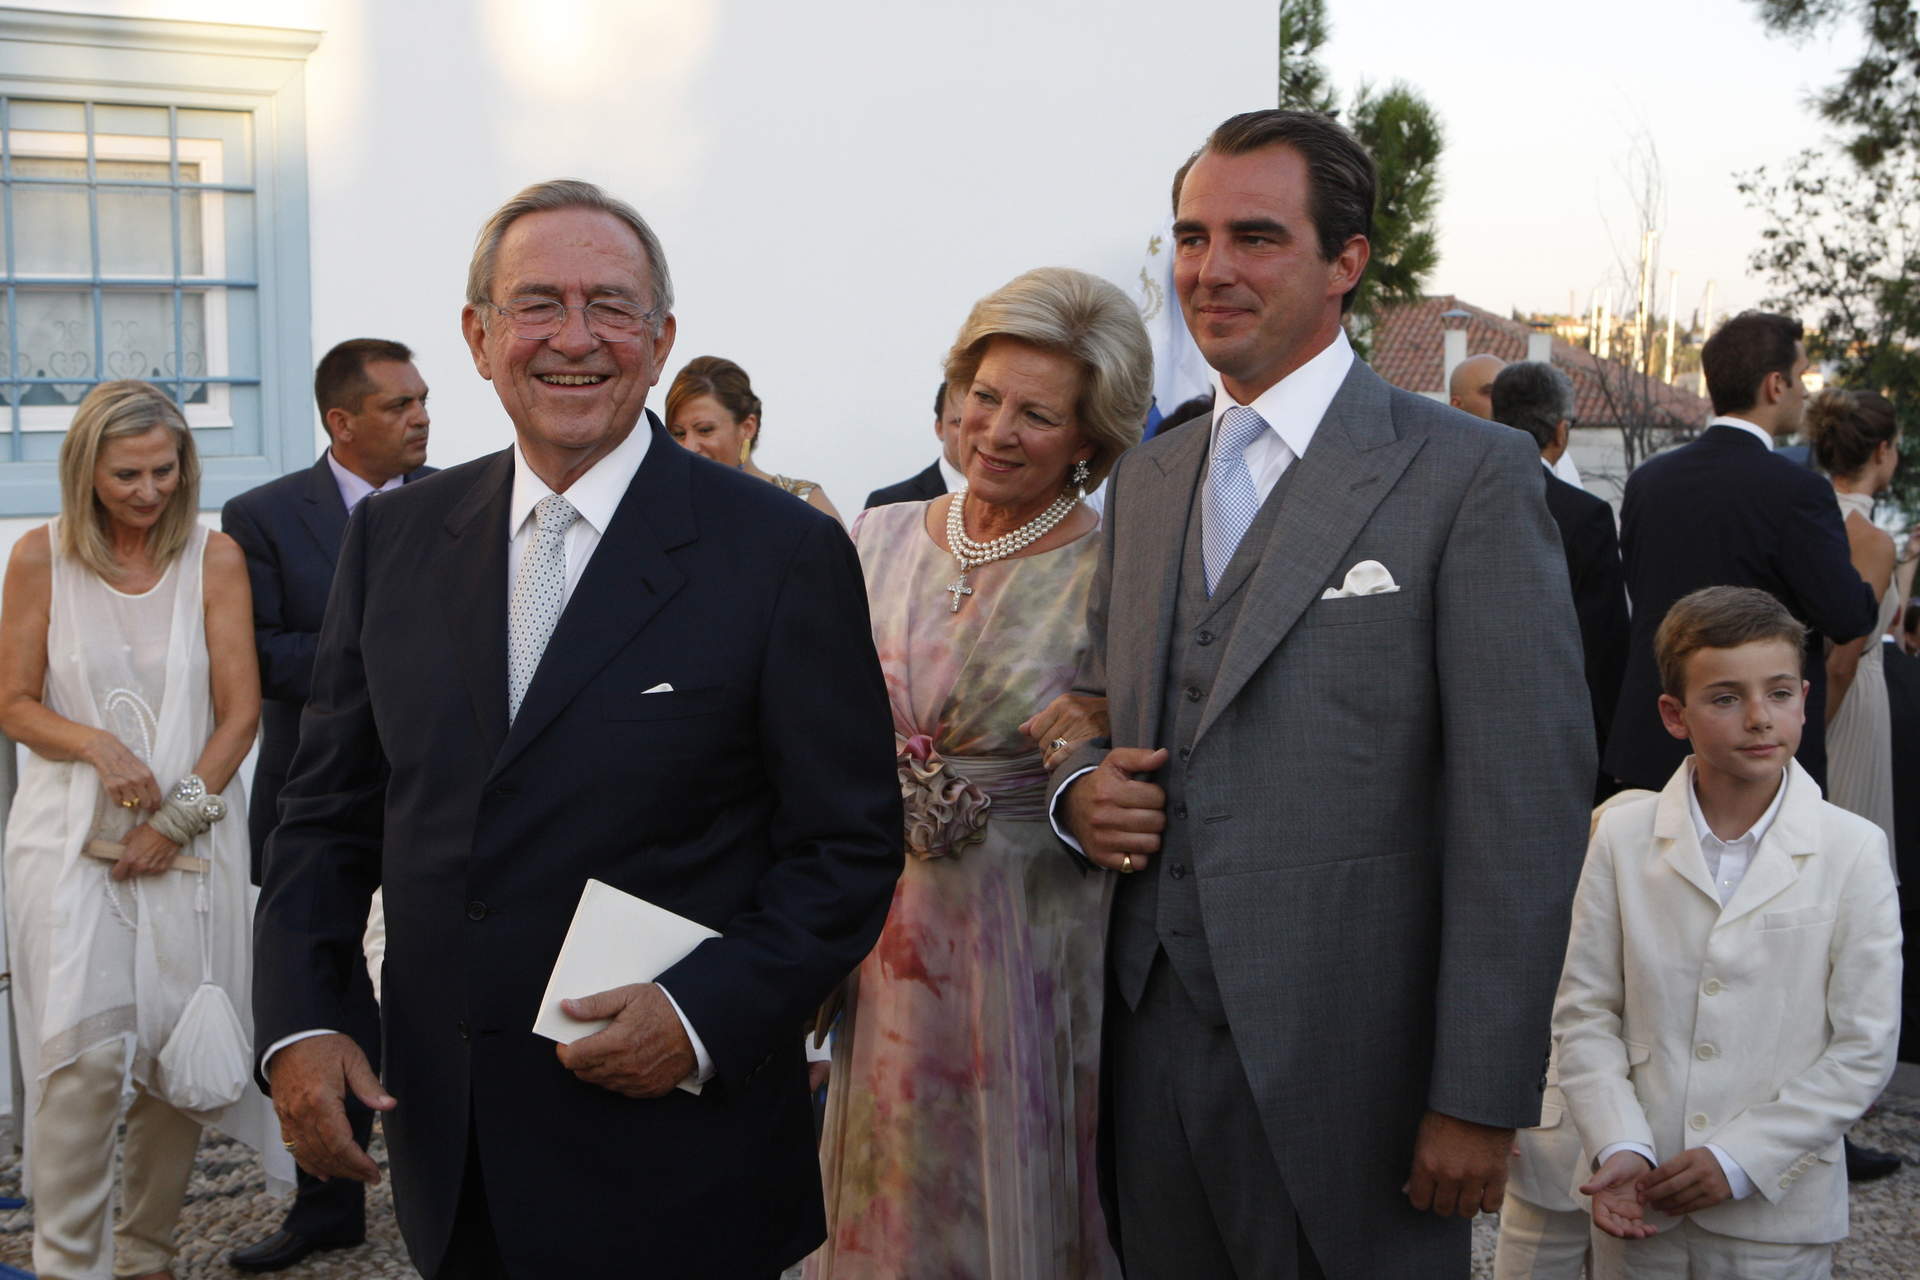 La Casa Real griega anuncia el divorcio del príncipe Nicolás de Grecia y Tatiana Blatnik